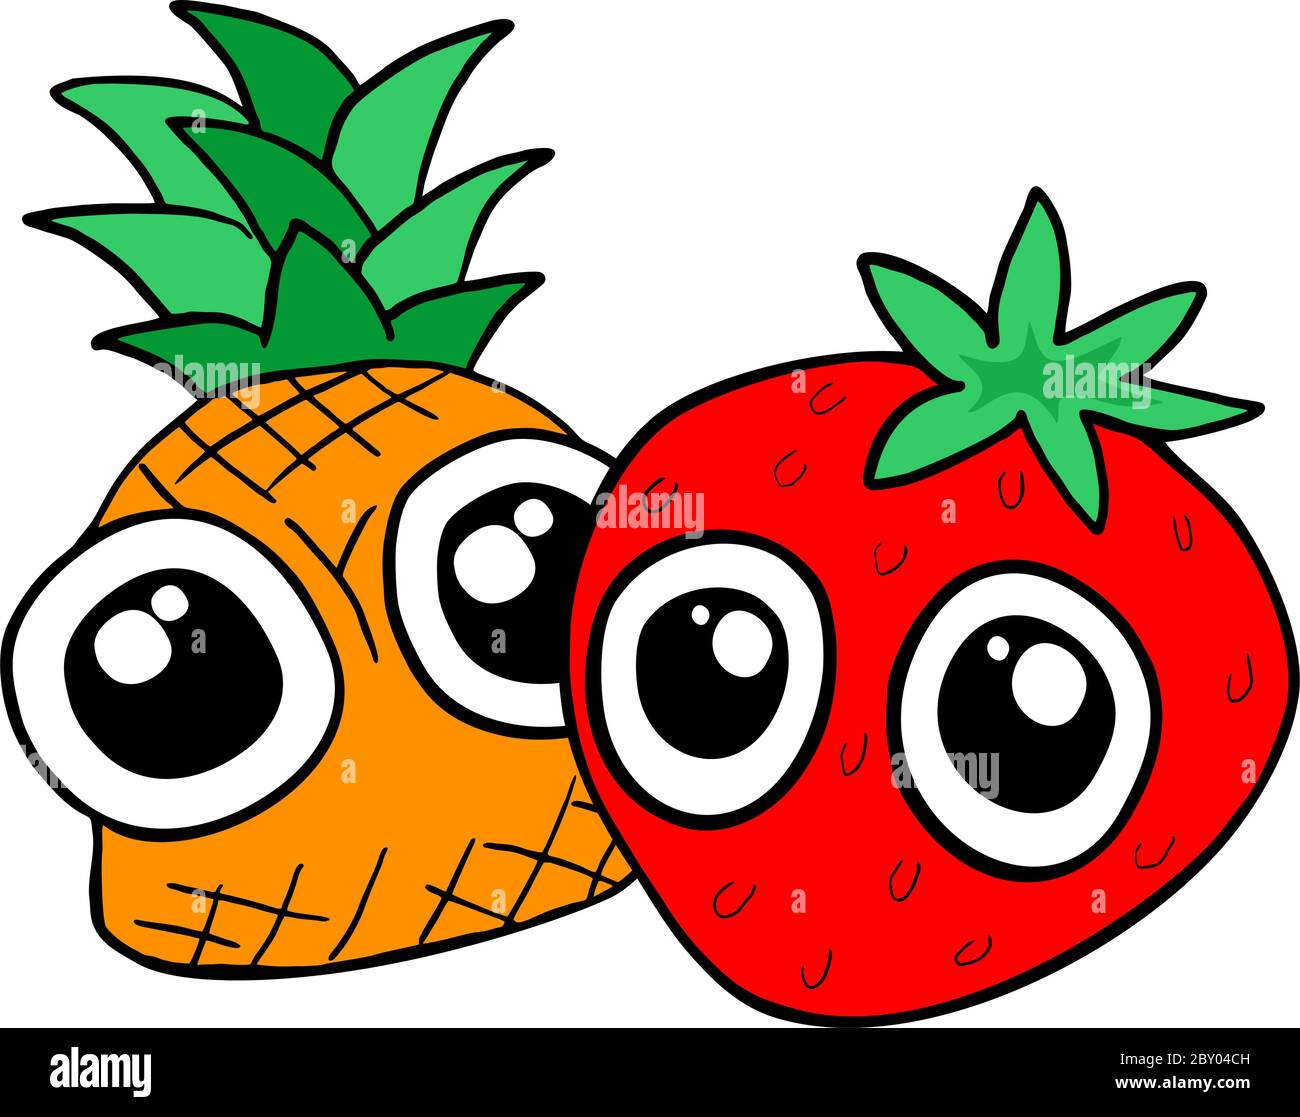 motif fruits amusants Illustration de Vecteur